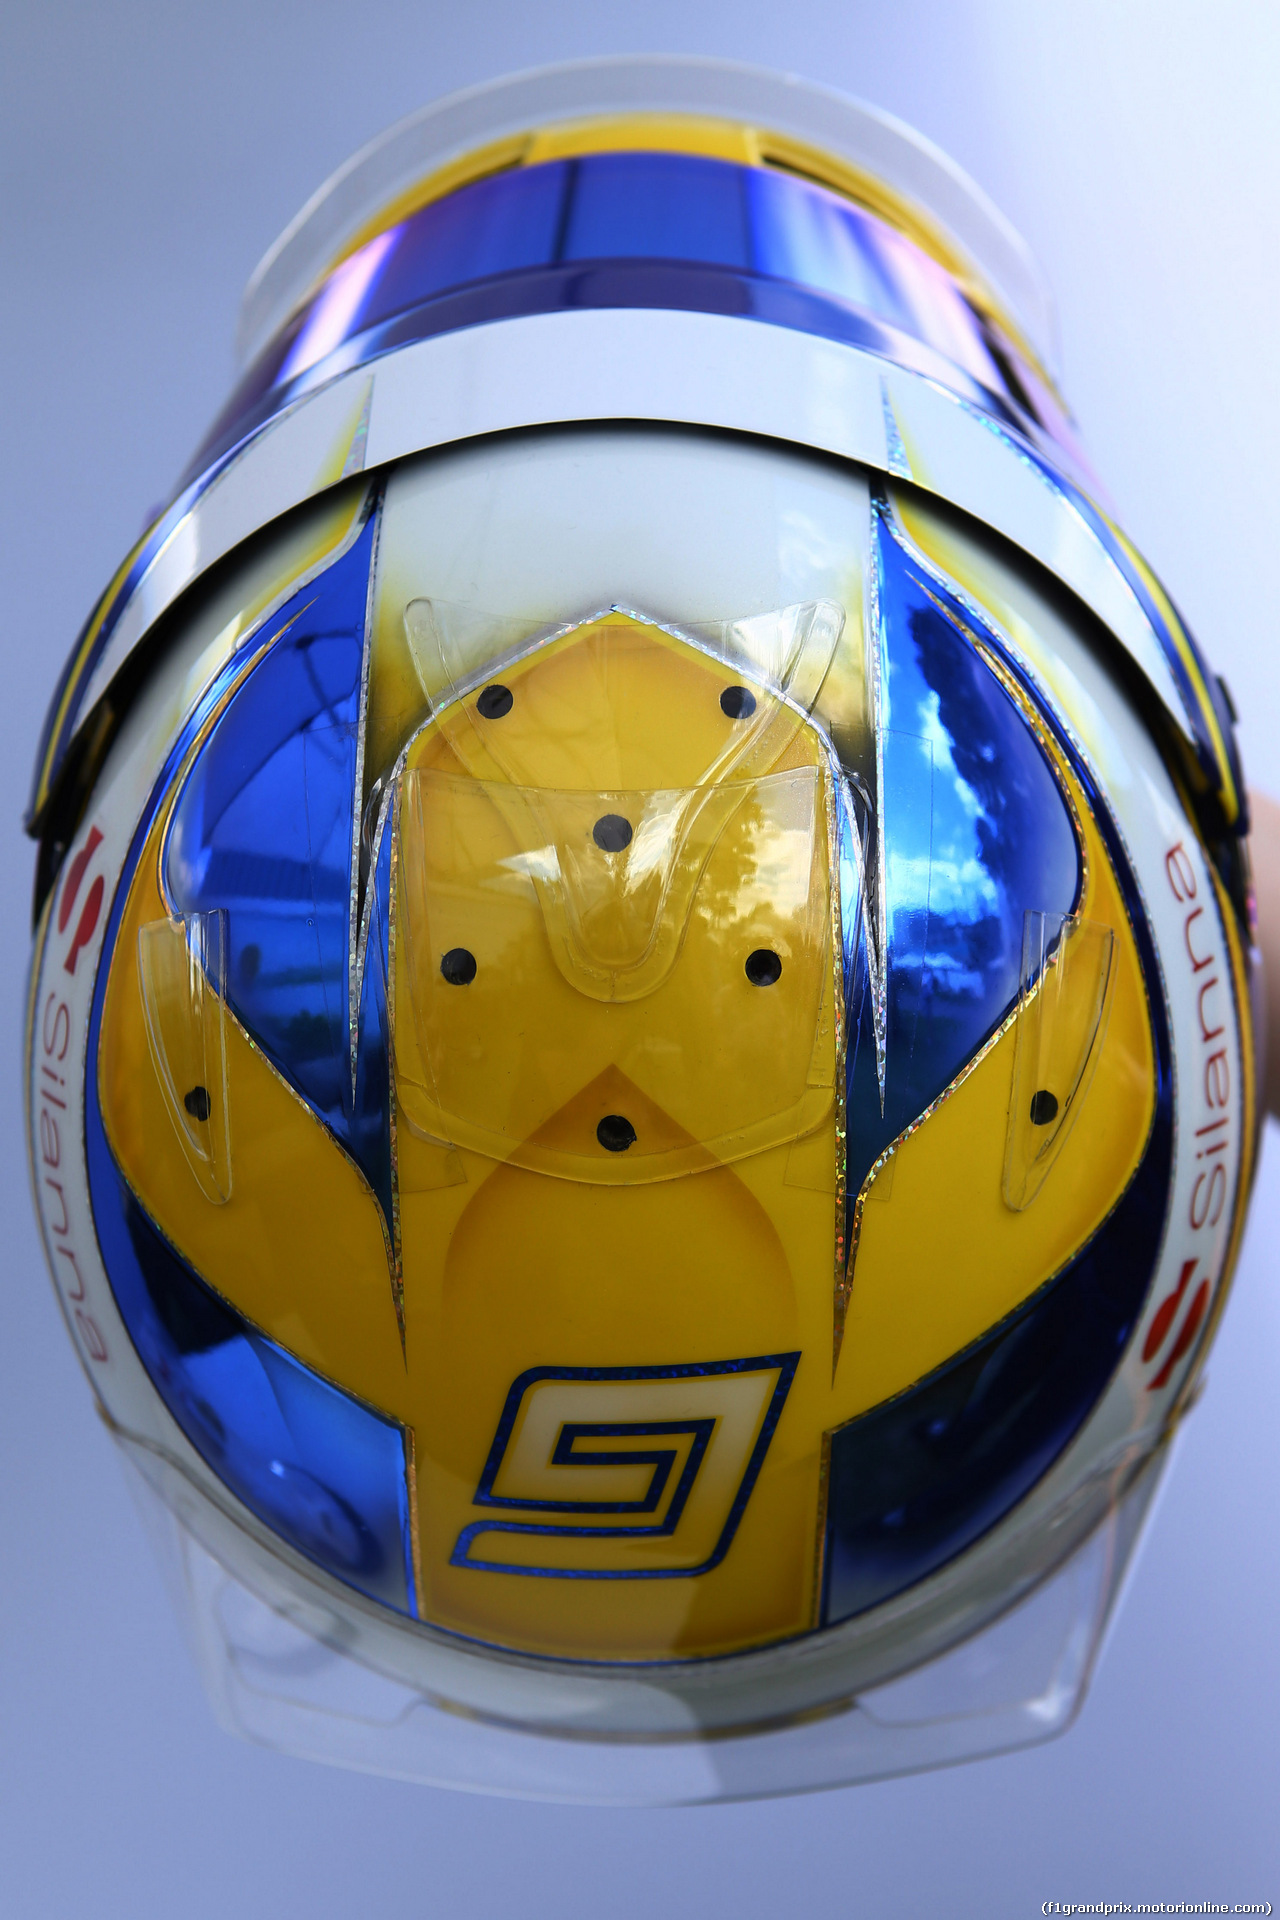 GP AUSTRALIA, 23.03.2017 - The helmet of Marcus Ericsson (SUE) Sauber C36